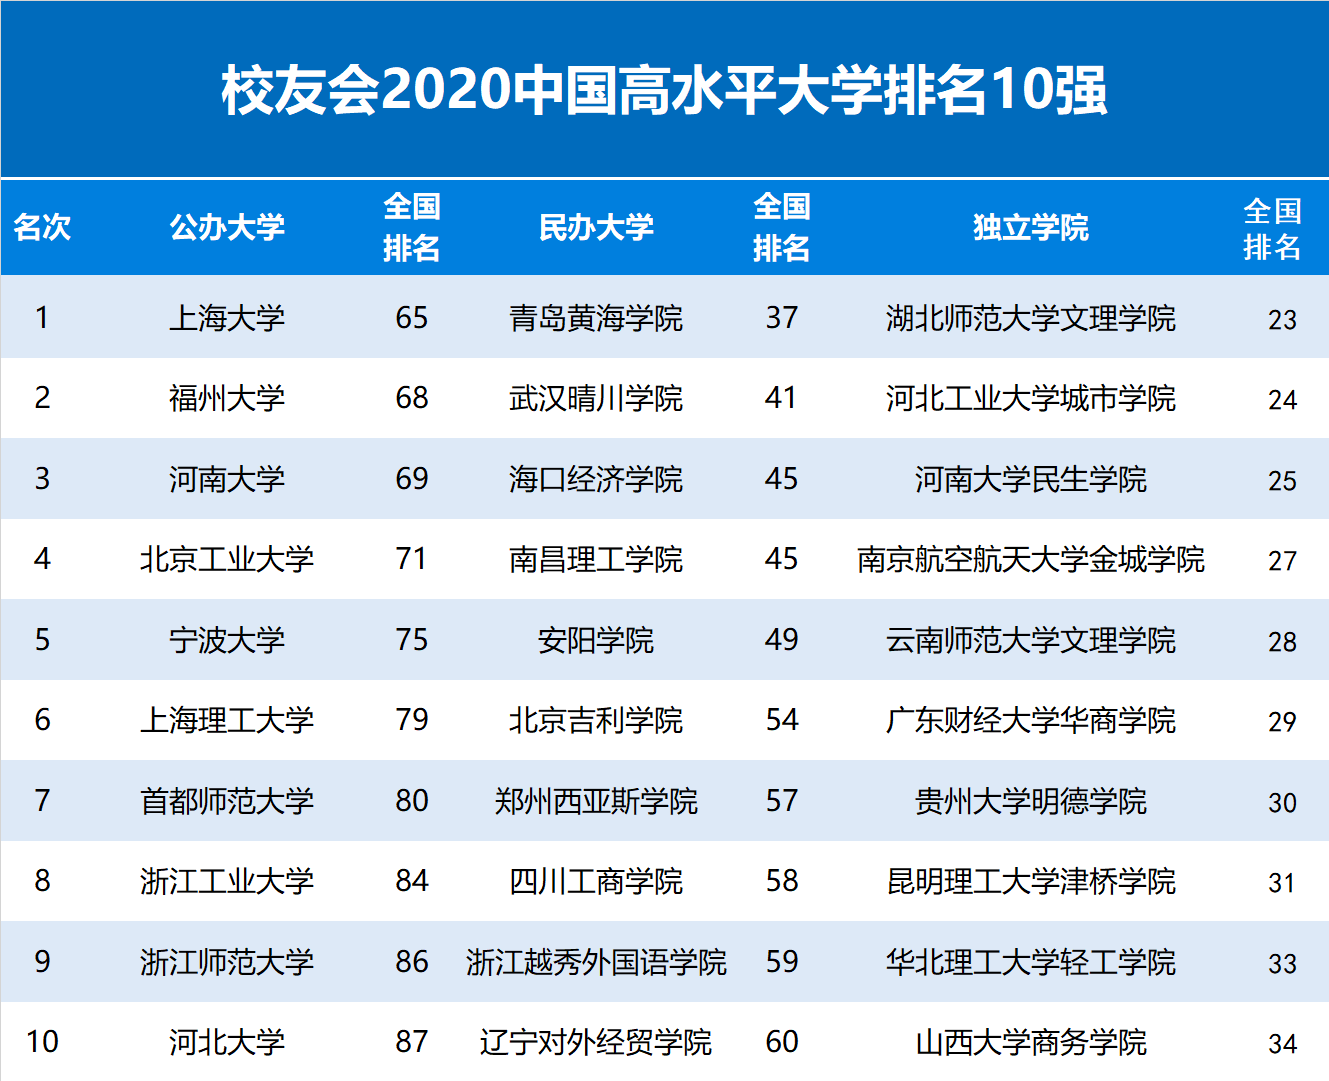 2020中国高水平大学排名 上海大学 青岛黄海学院 湖师大文理学院第一